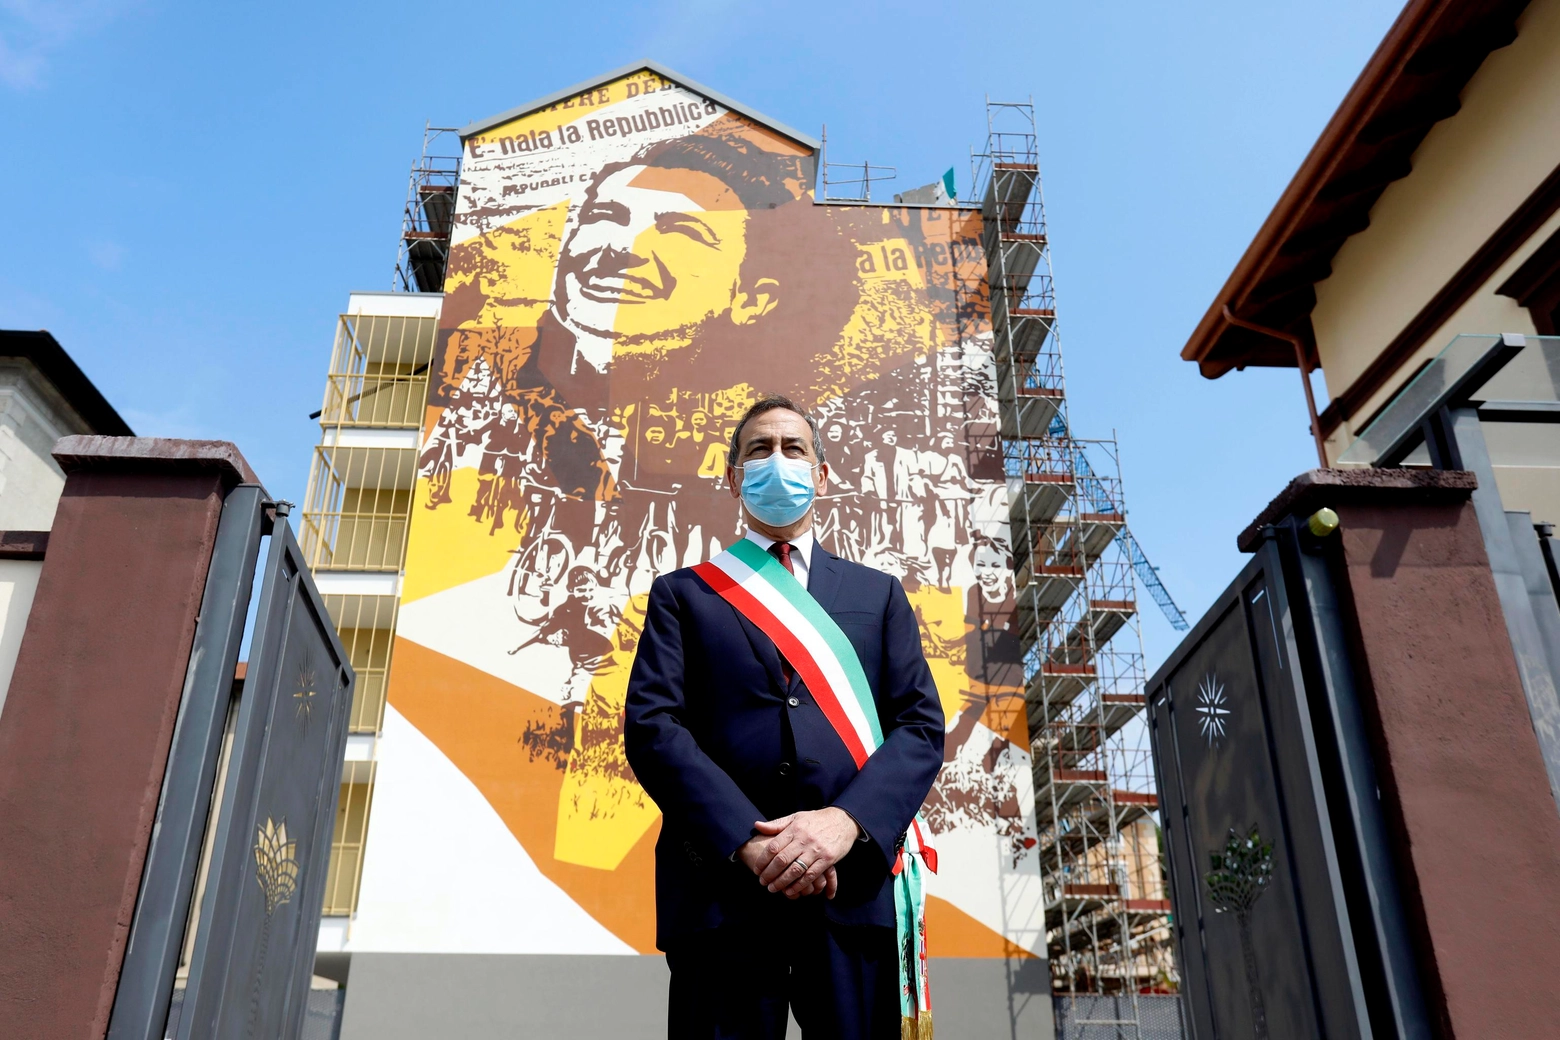 Milano, il maxi-murale con la donna simbolo dell'Italia democratica